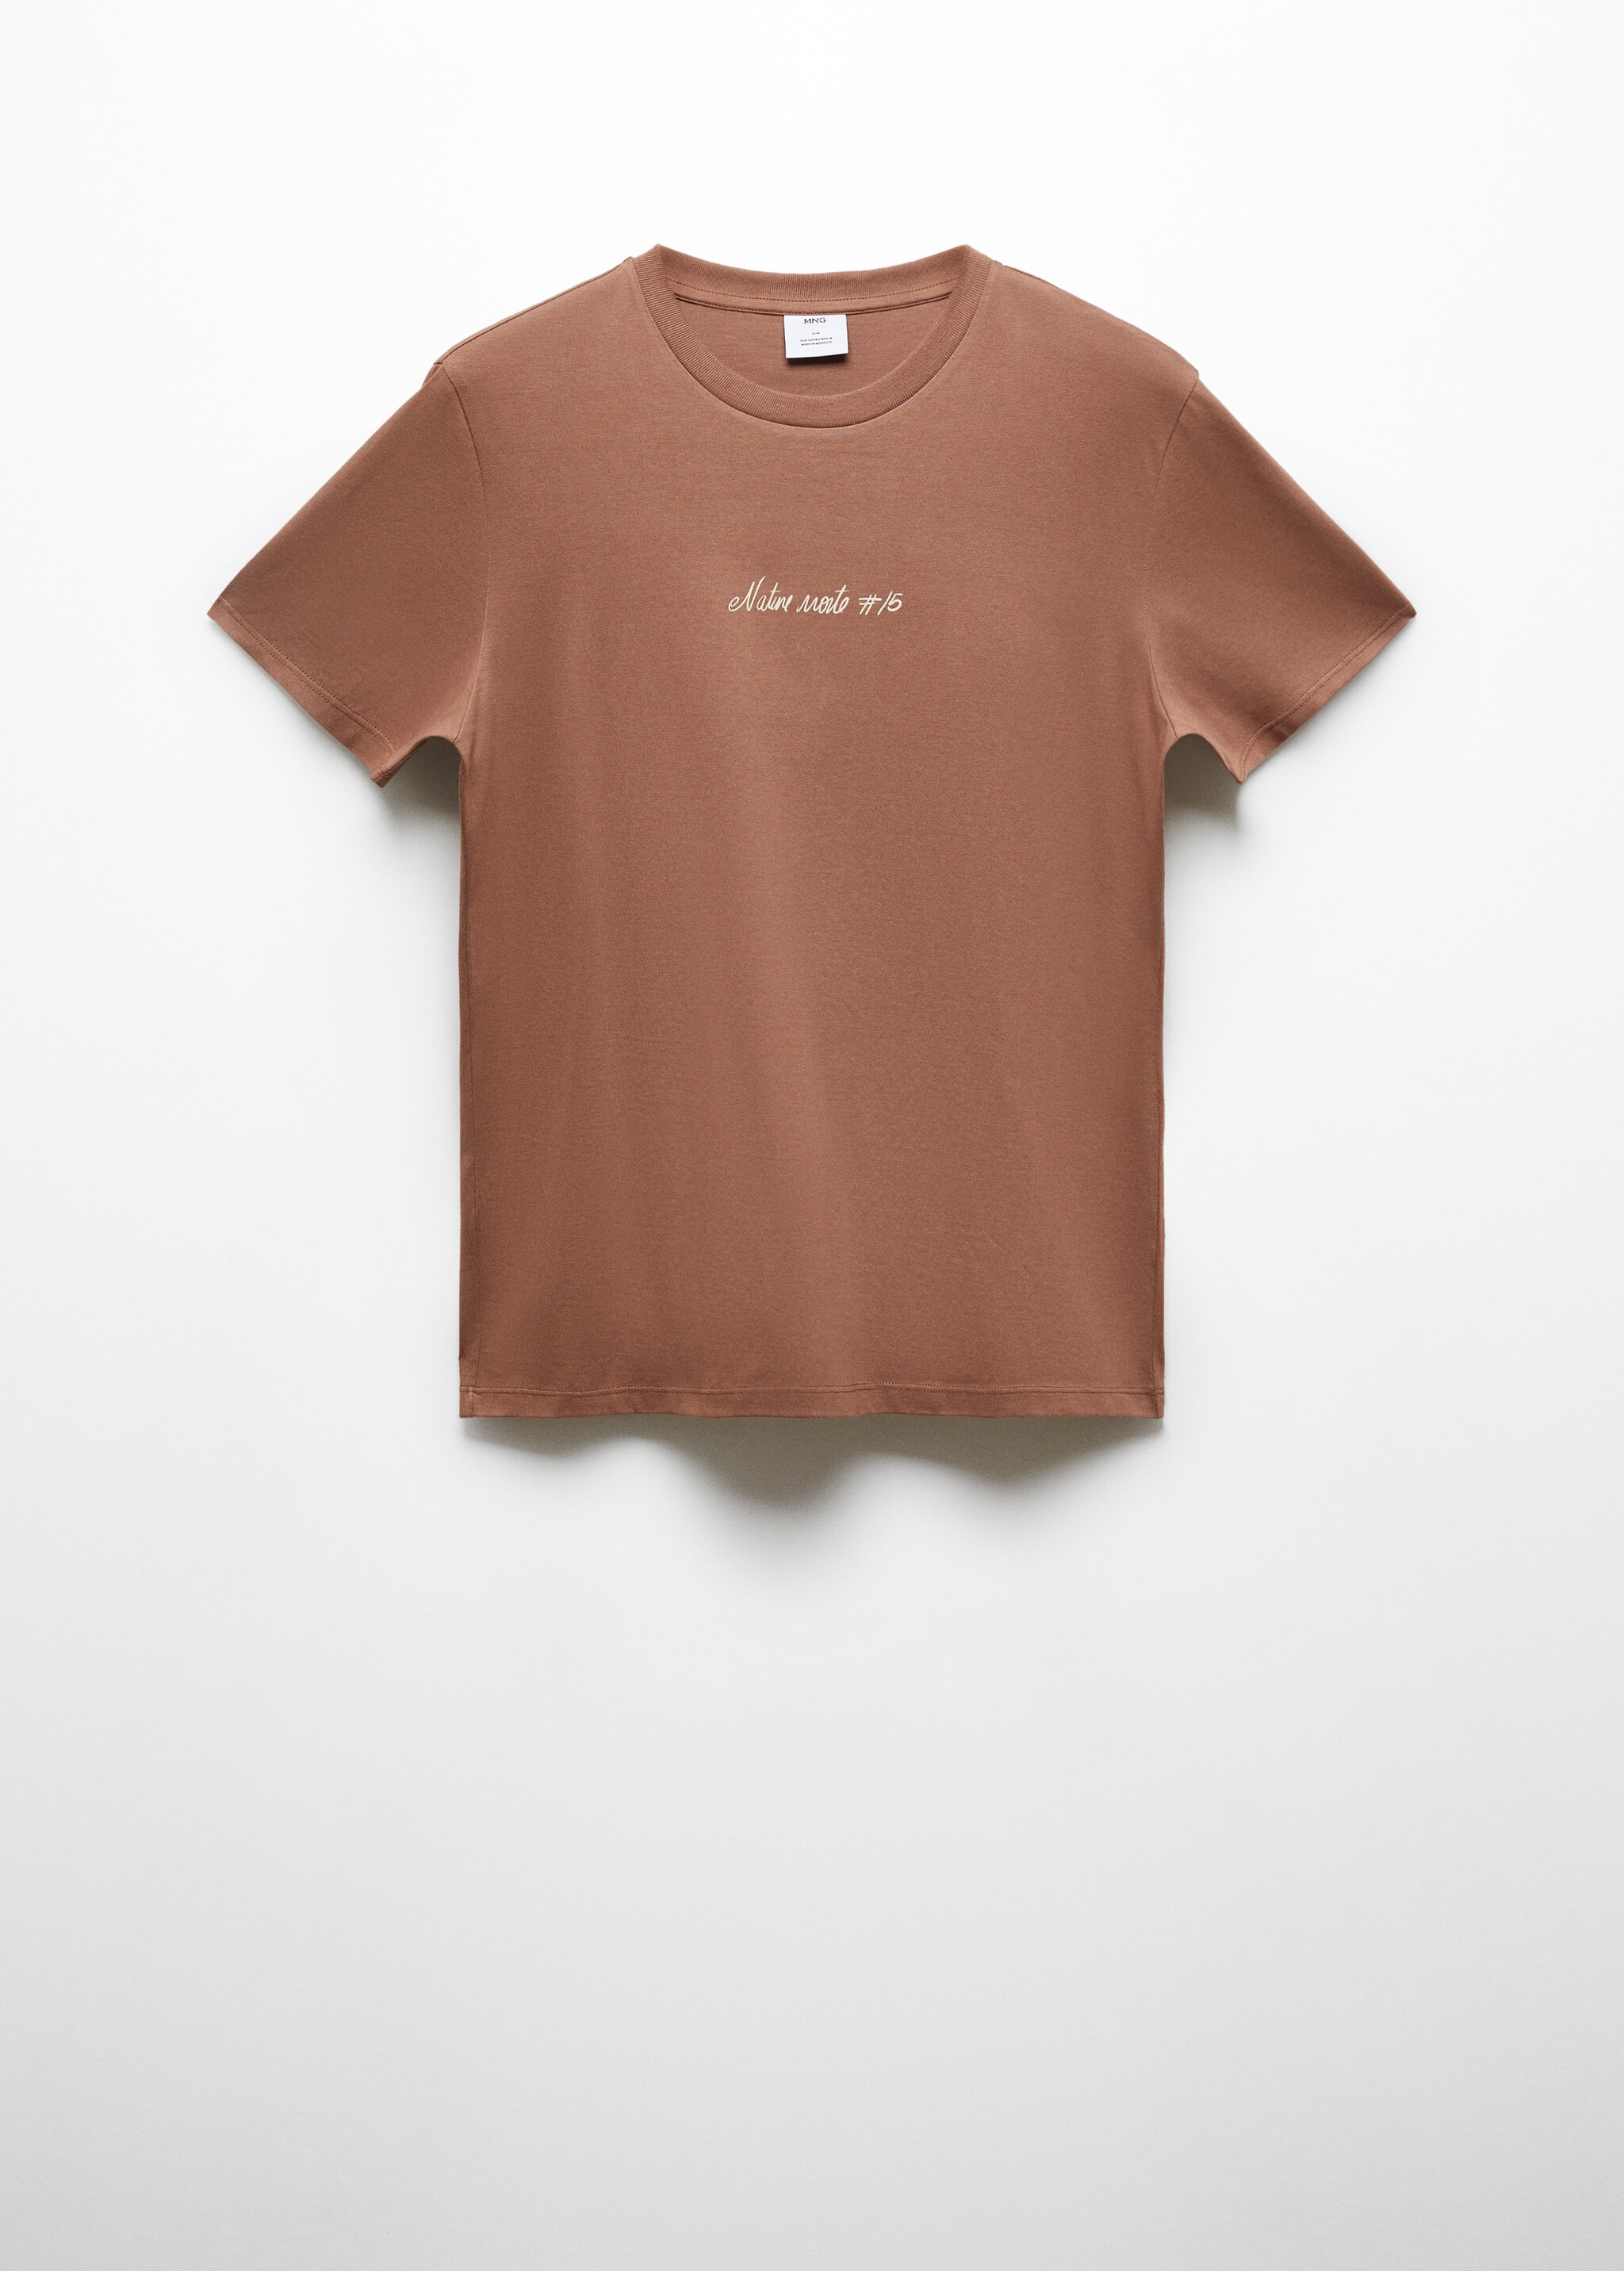 100% cotton t-shirt with printed detail - Artigo sem modelo